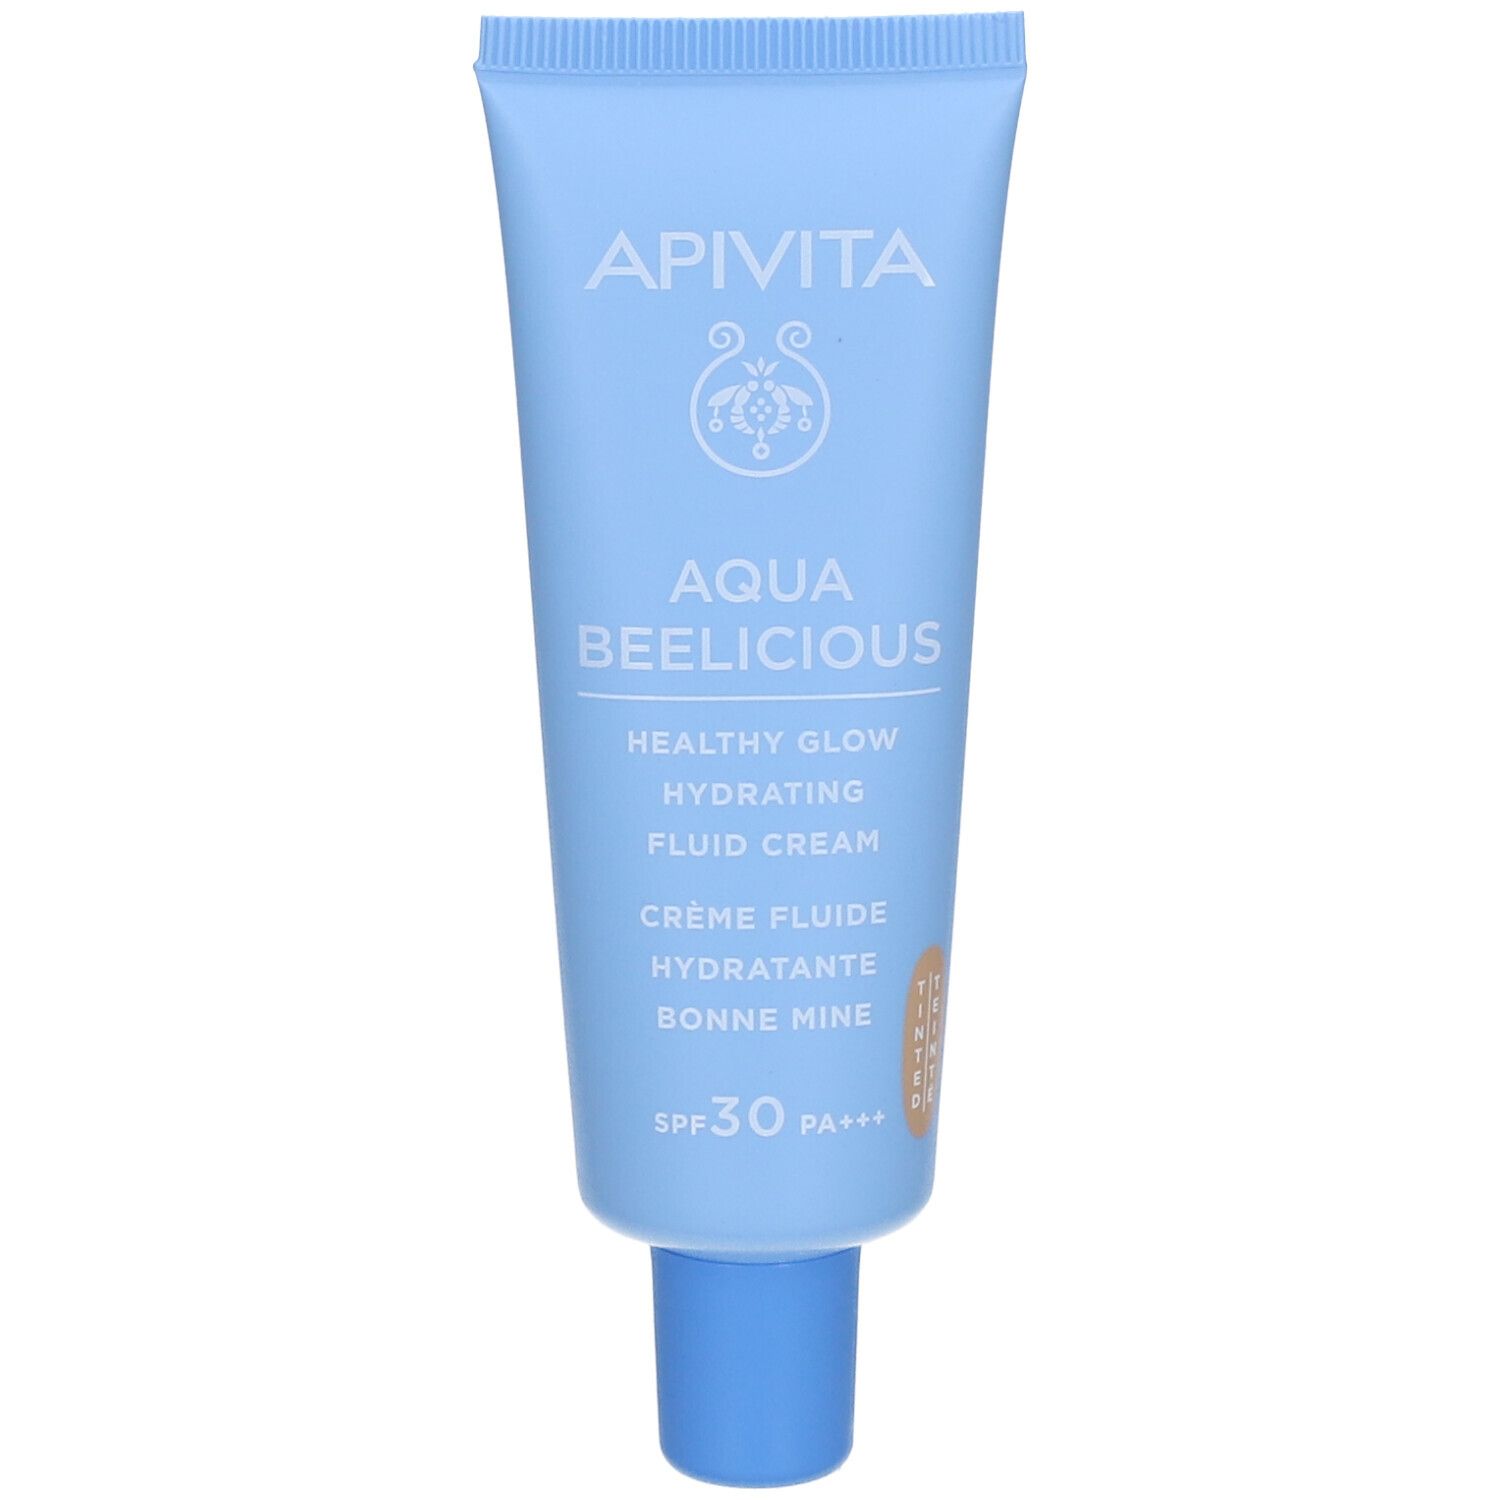 Apivita Aqua Beelicious Crème fluide hydratante bonne mine Spf30